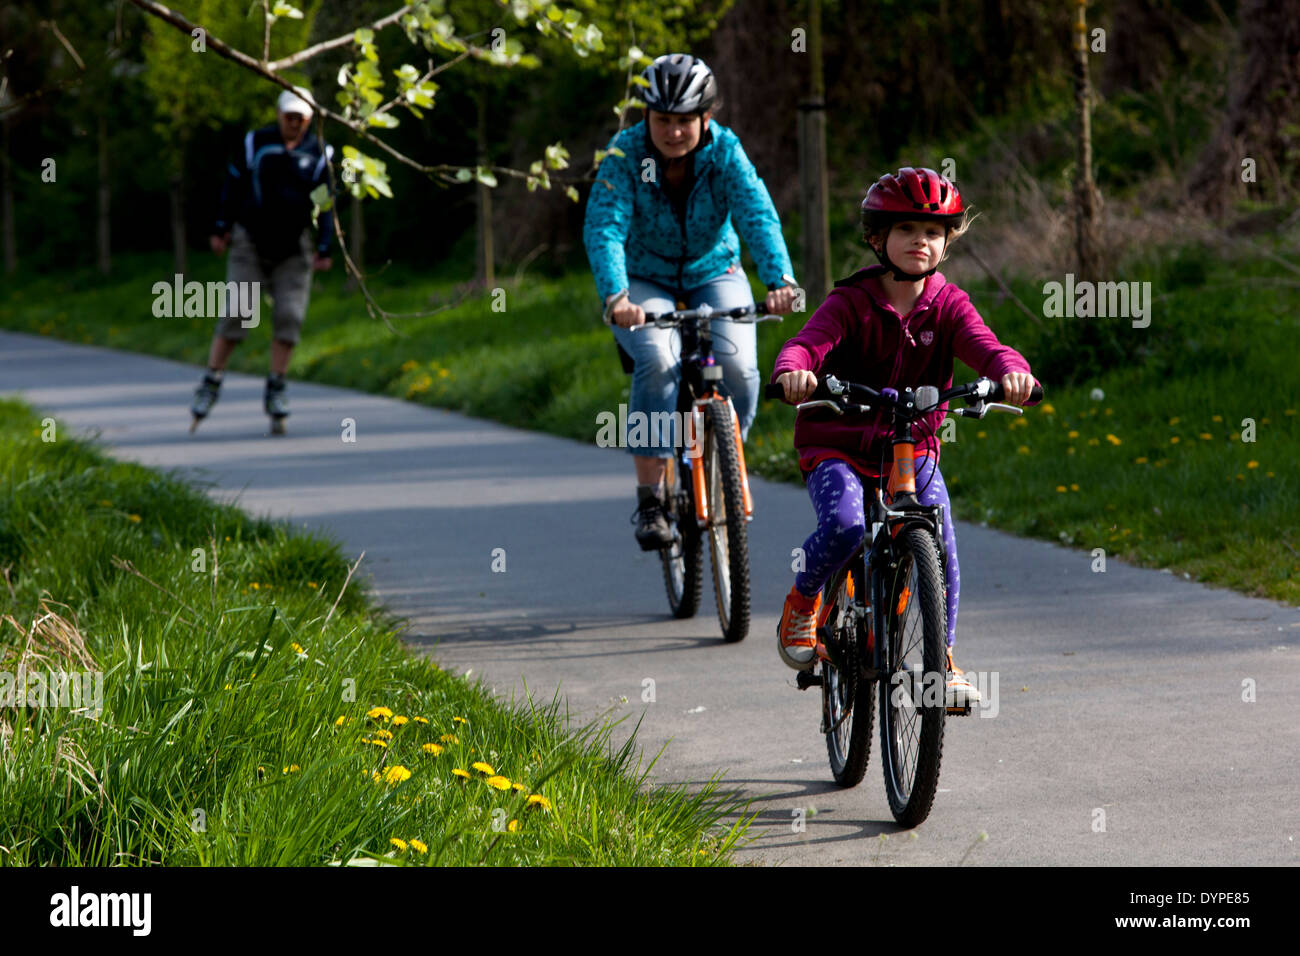 Famille sur la piste cyclable, style de vie sain vélo enfant Banque D'Images